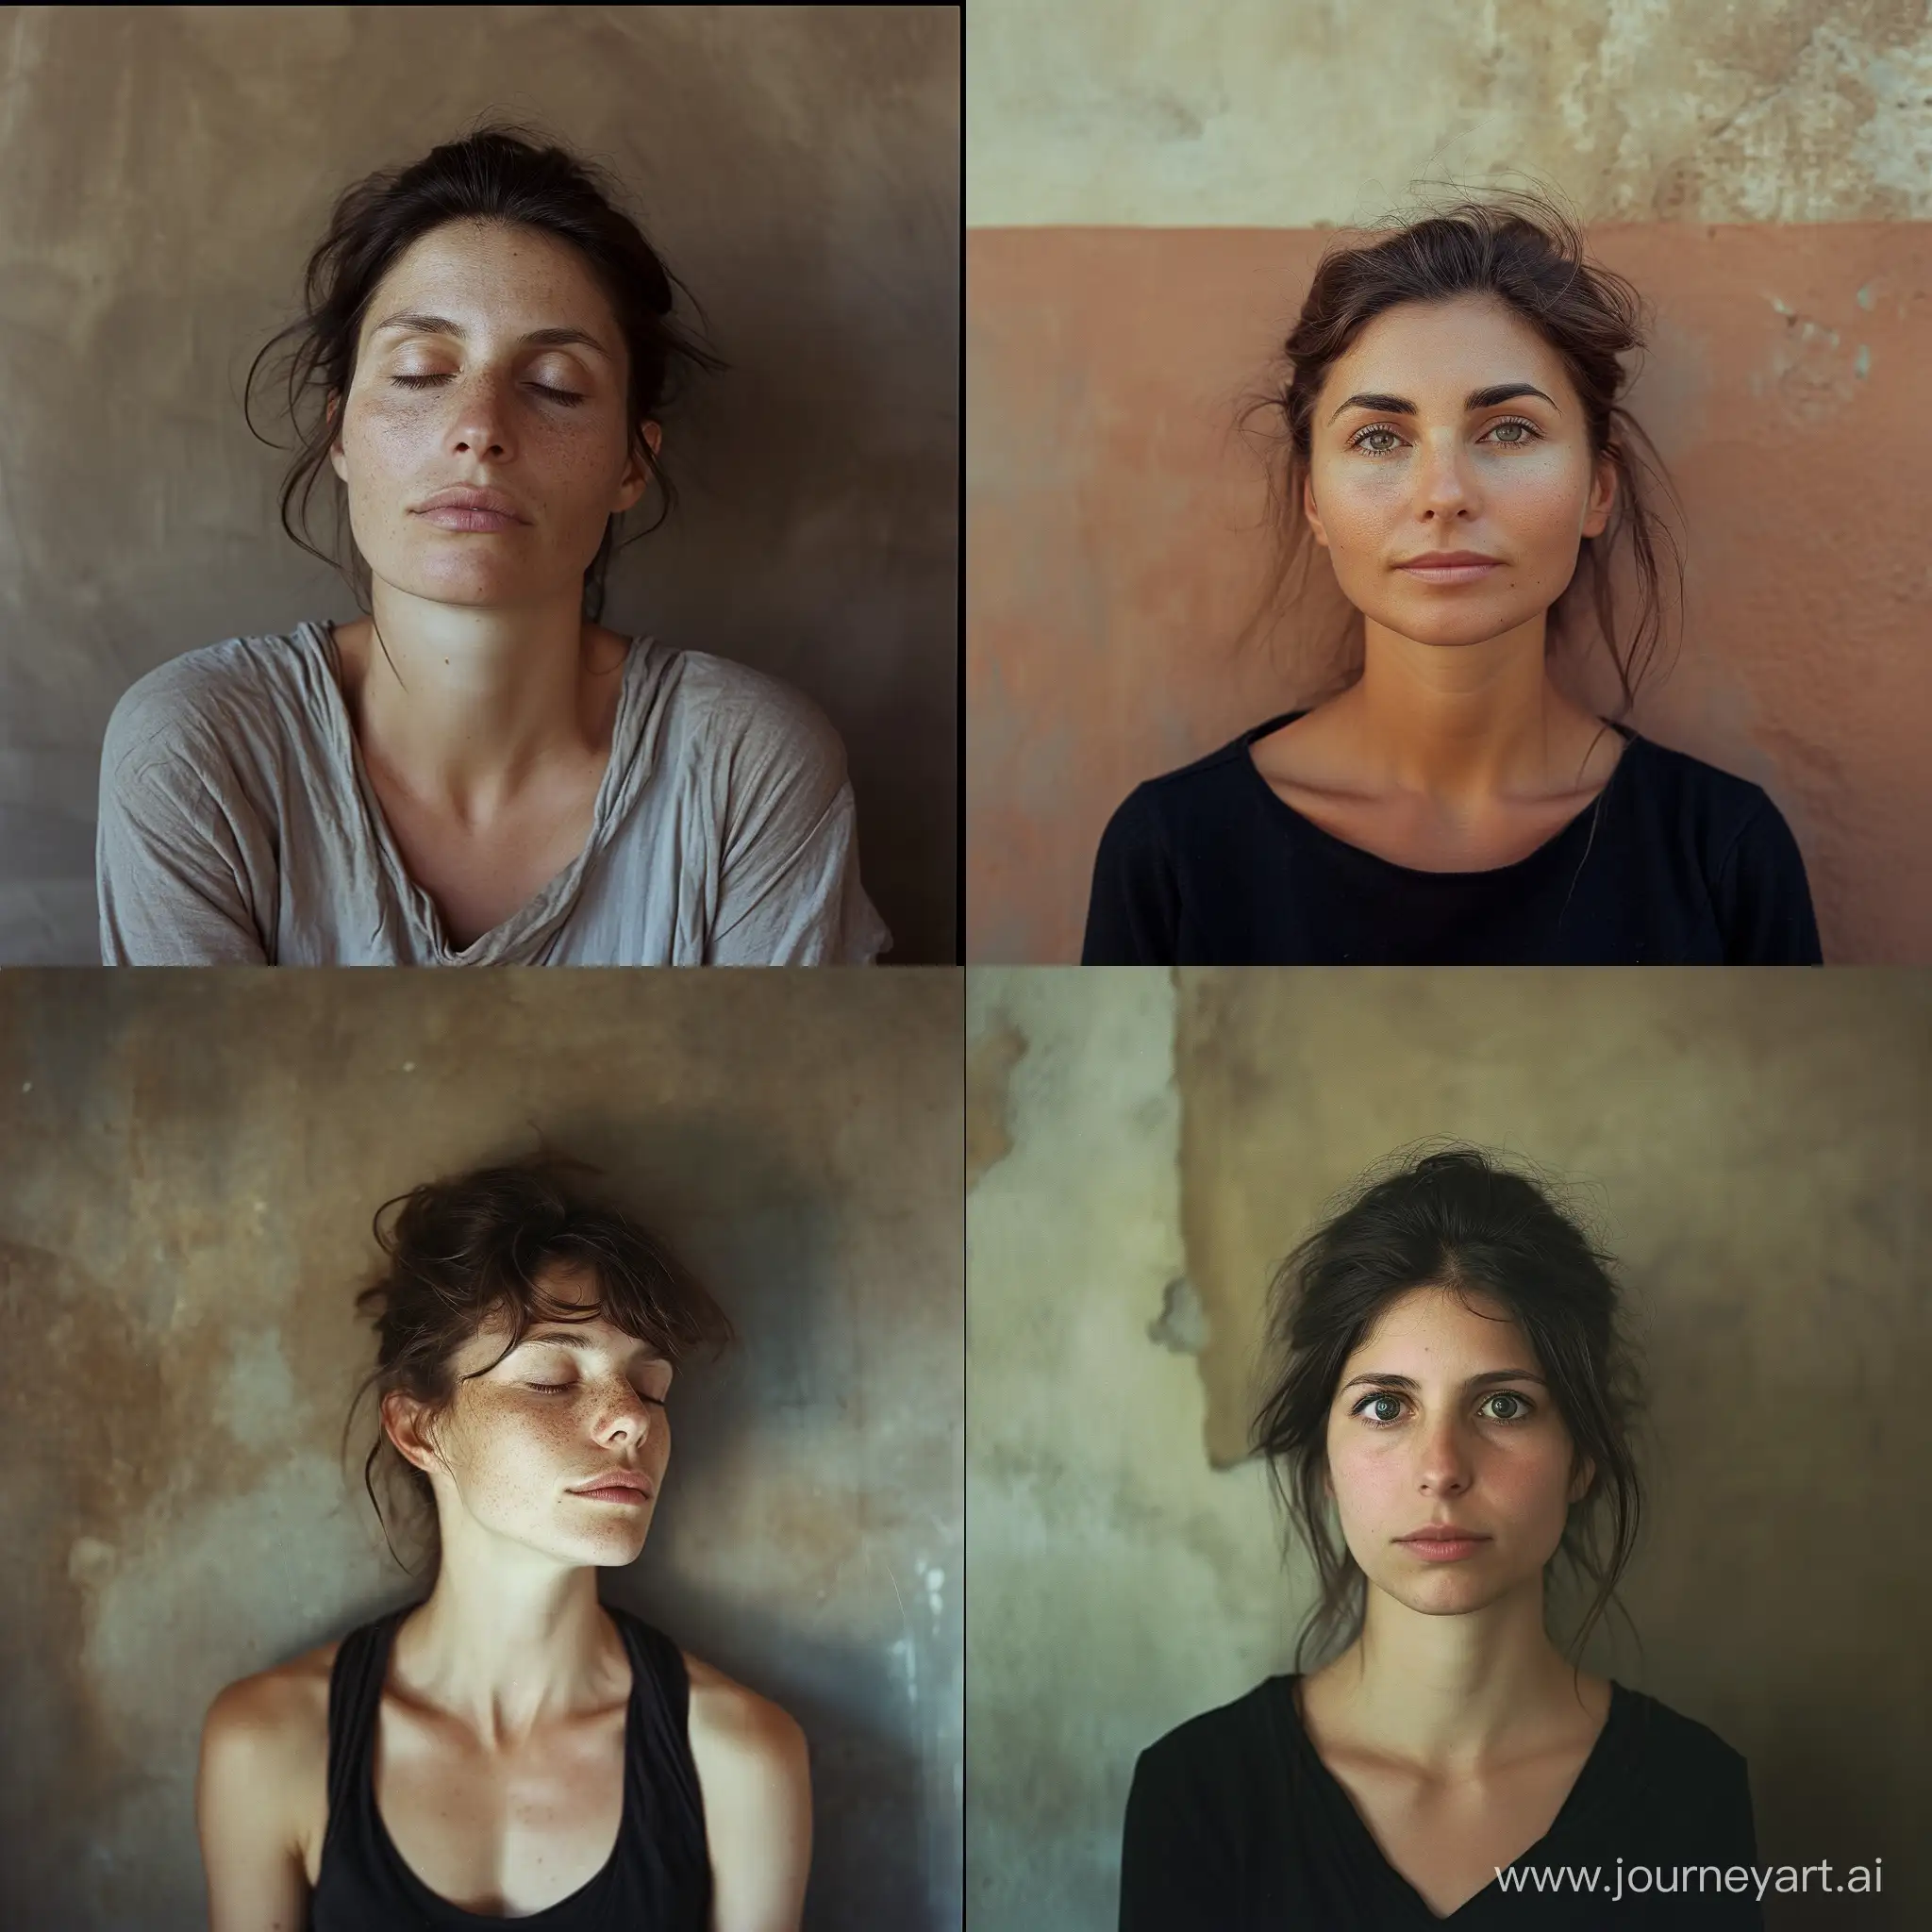 Tranquil-40YearOld-Italian-Woman-Portrait-in-Summer-Light